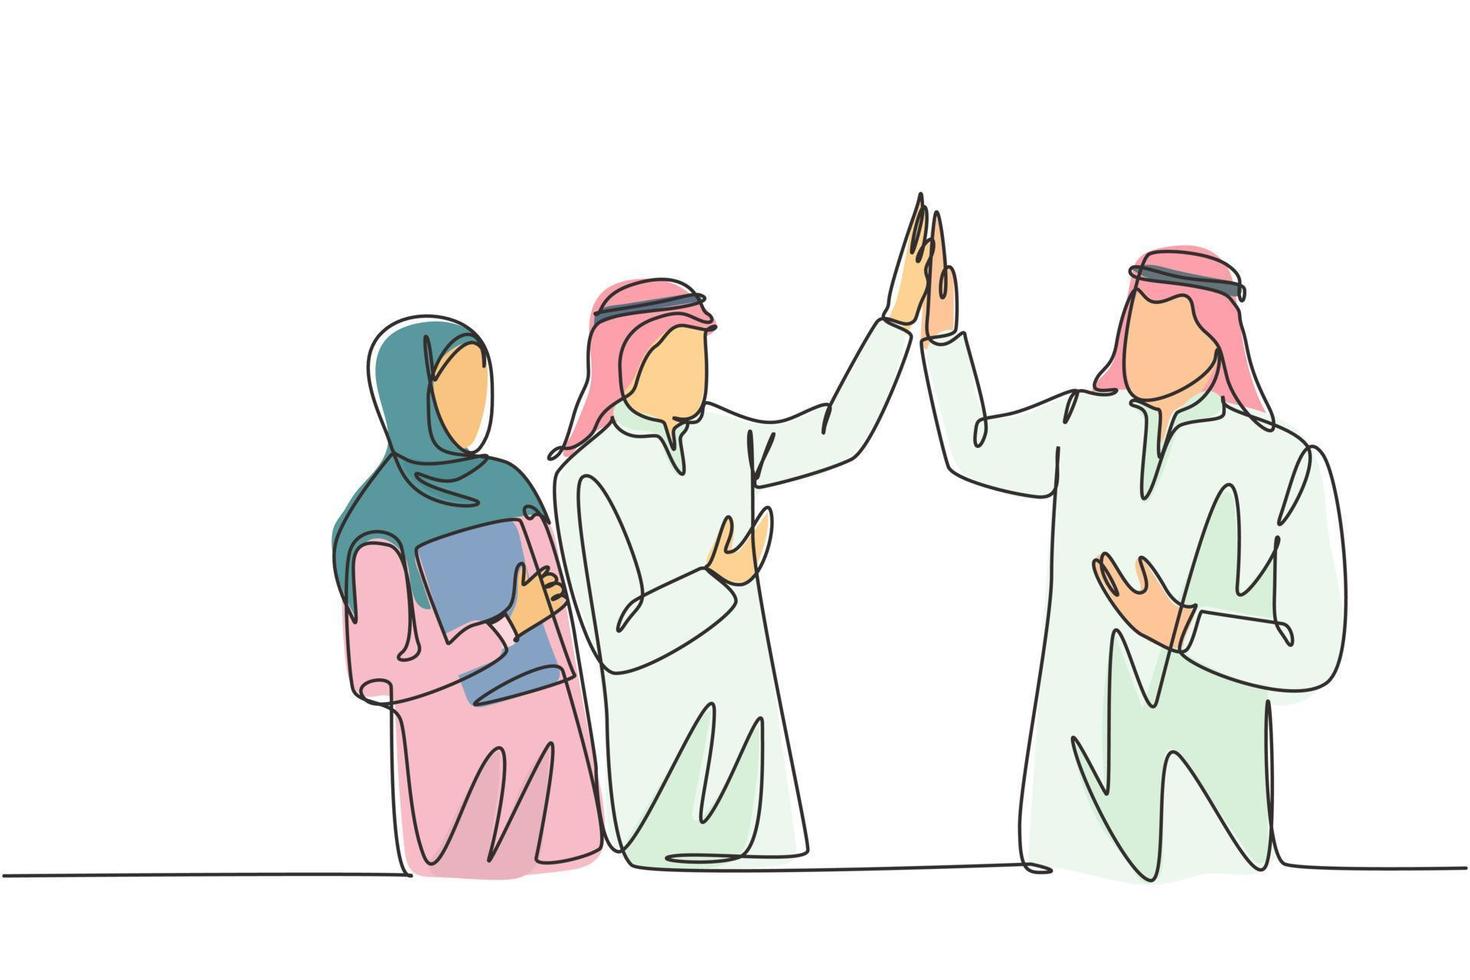 Eine einzige Strichzeichnung junger muslimischer Angestellter, die Freunden eine High Five-Geste geben. saudi-arabische geschäftsleute mit shmag, kandora, kopftuch, thobe. durchgehende Linie zeichnen Design-Vektor-Illustration vektor